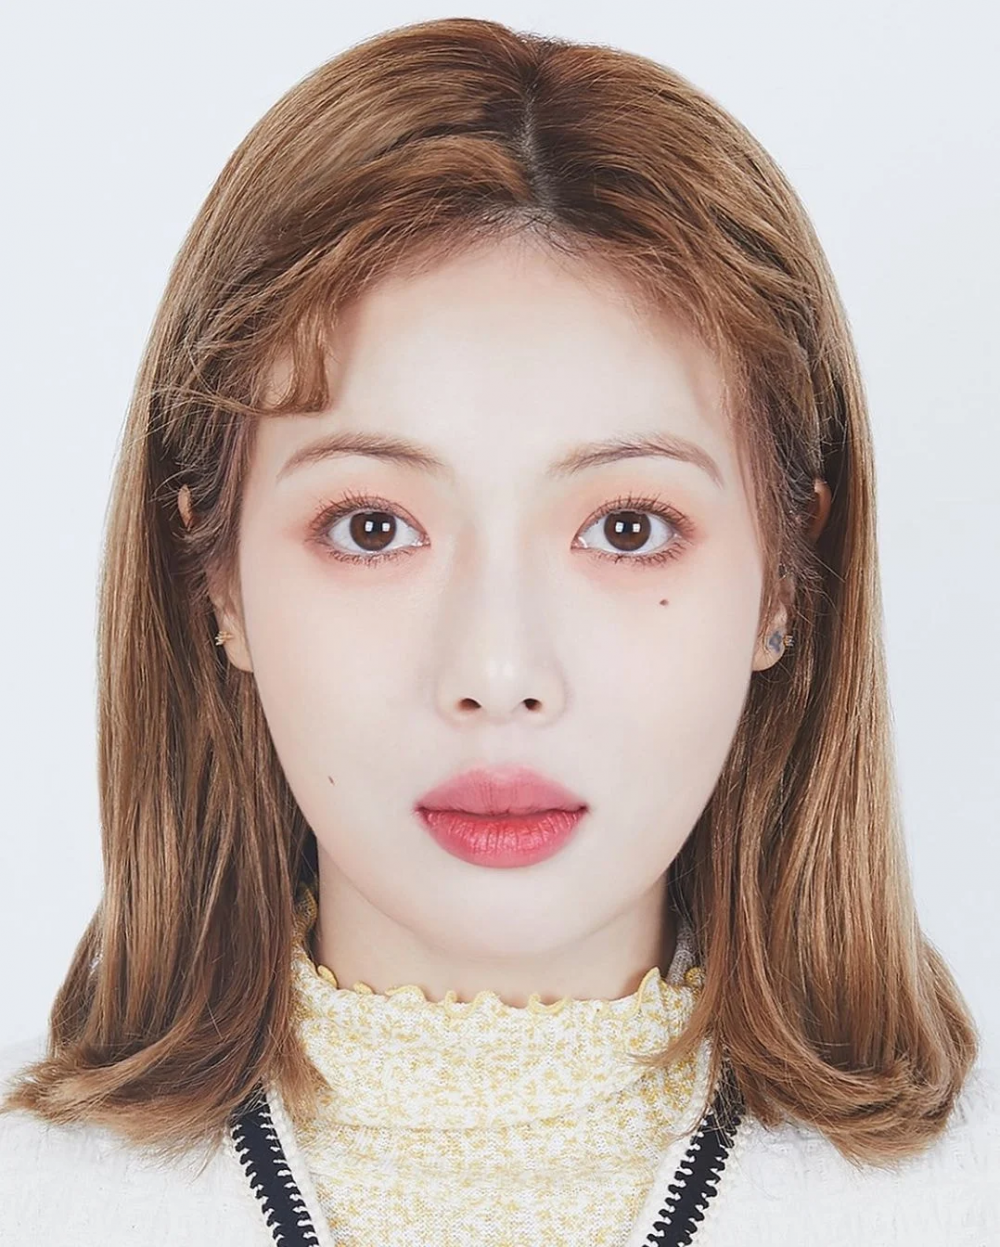 Хёна привлекла внимание нетизенов после того, как раскрыла свое фото на паспорт